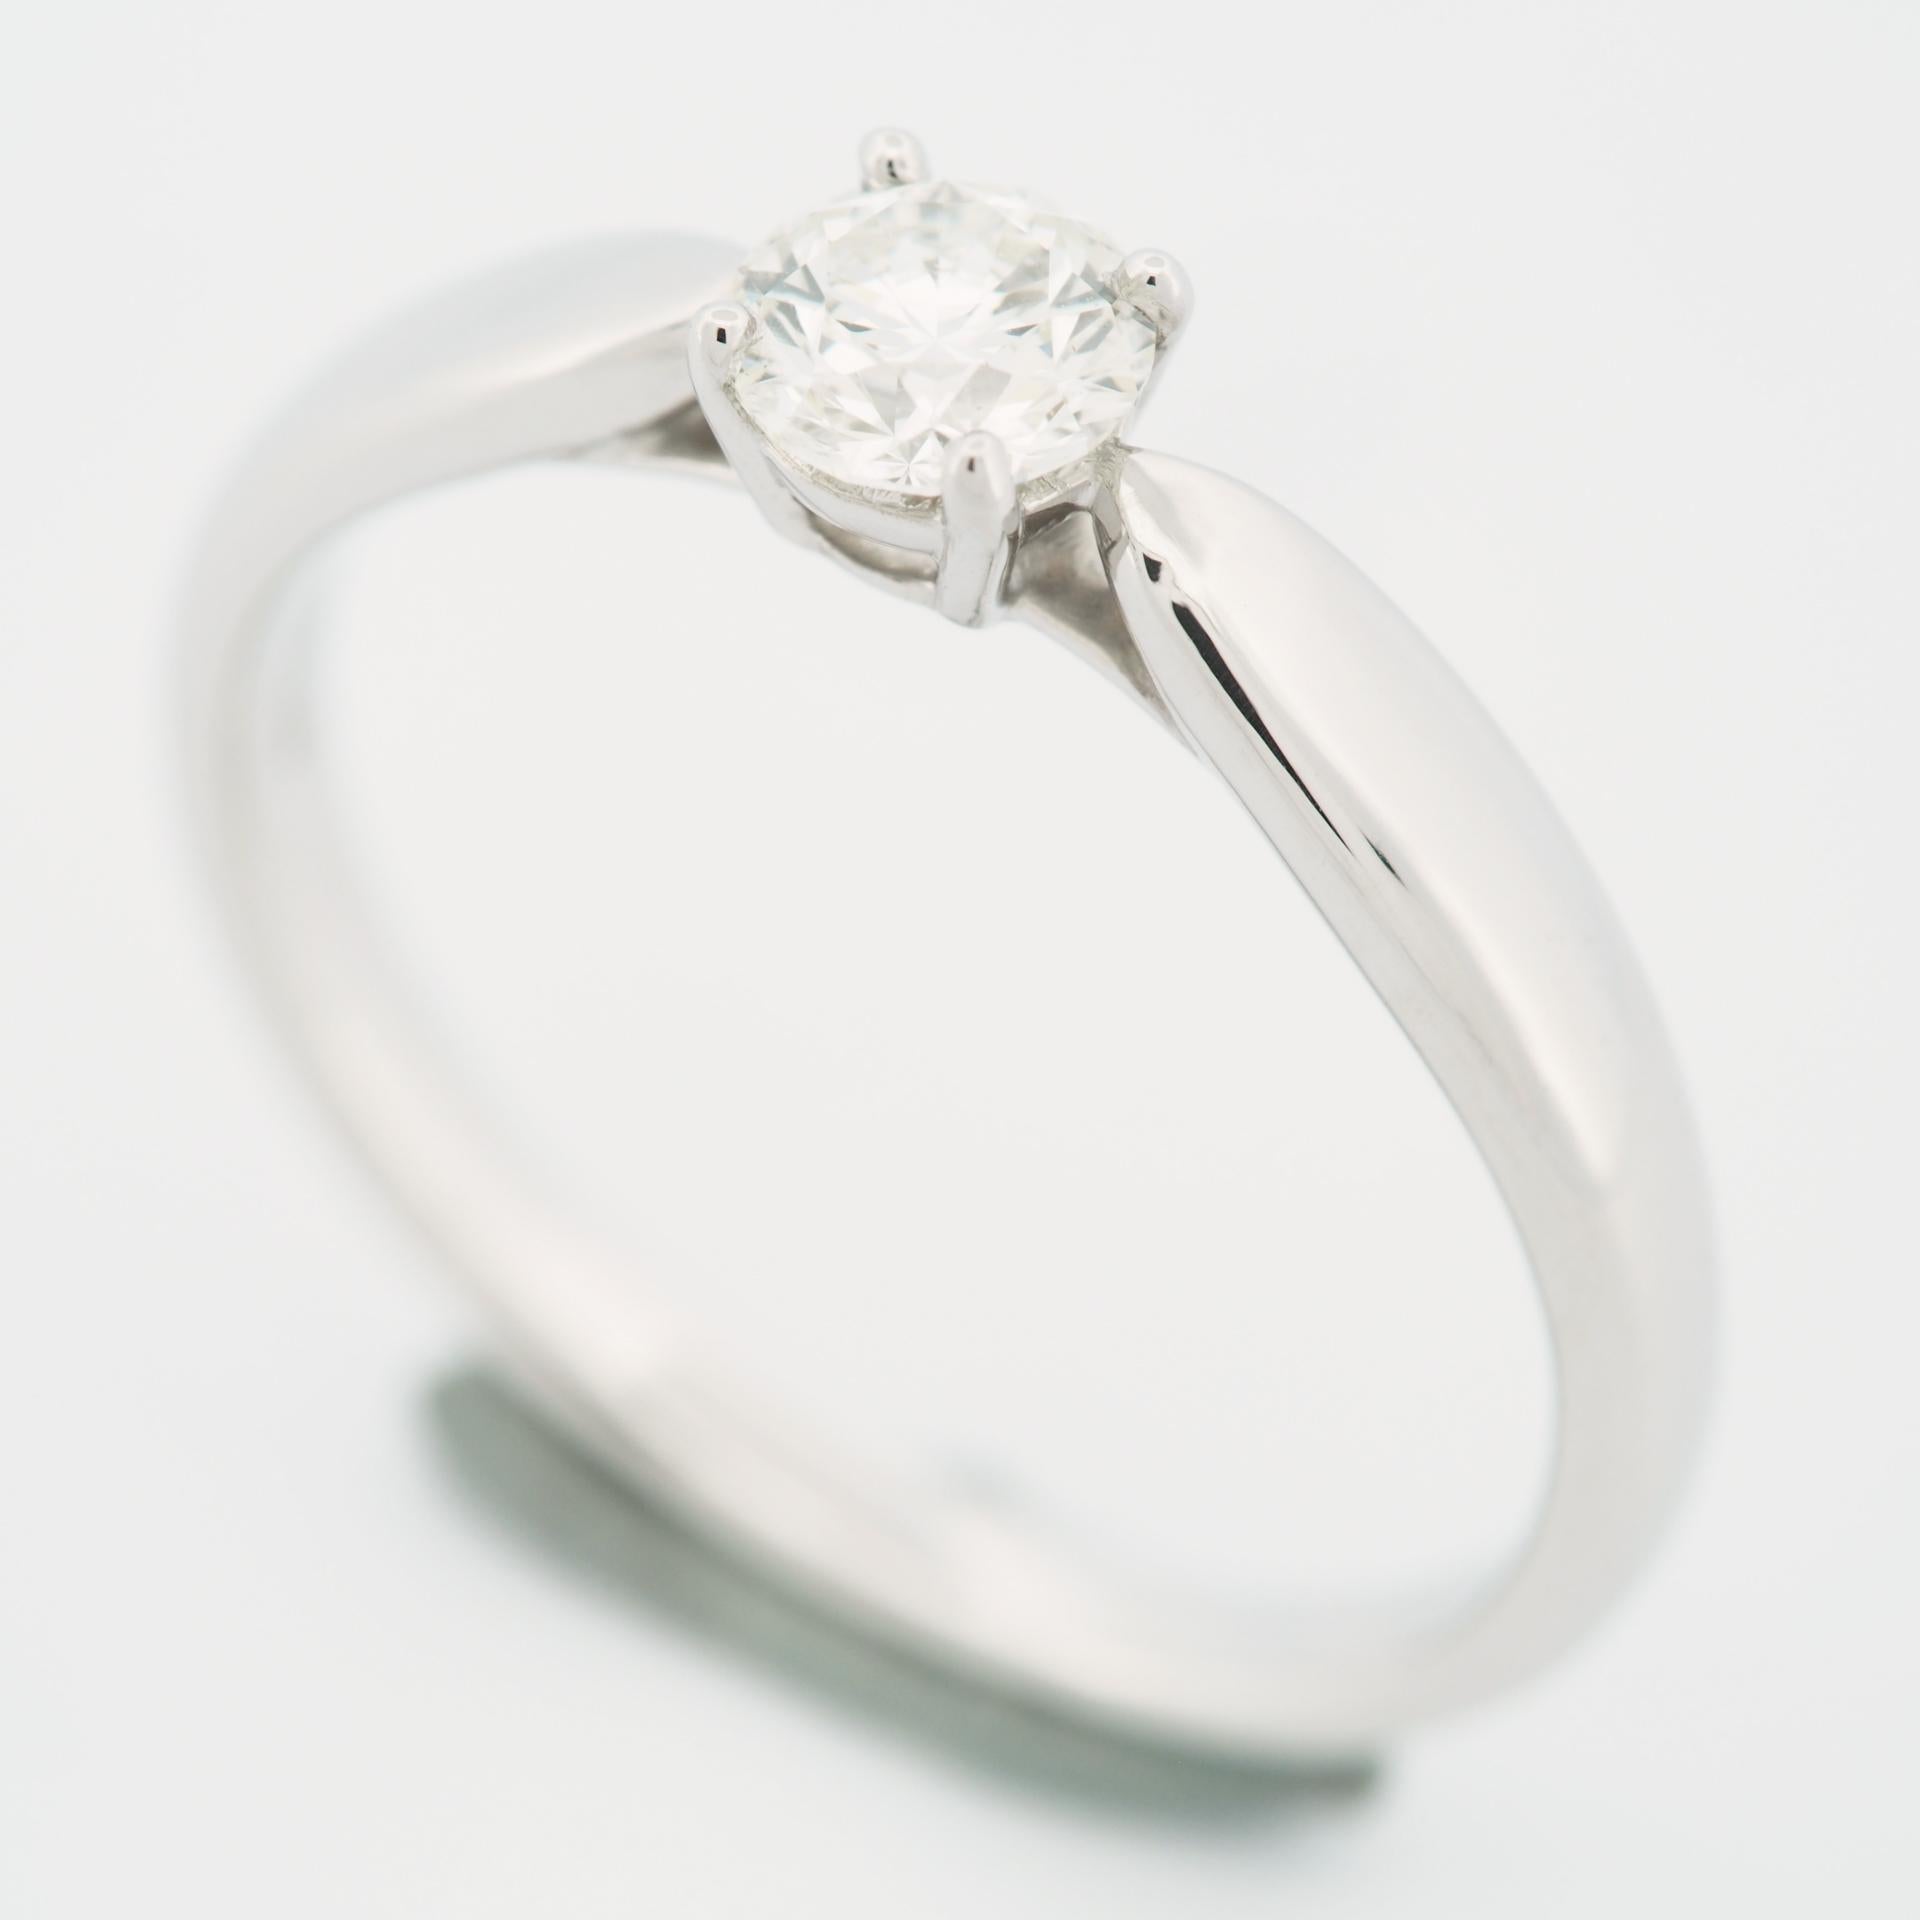 Article : Bague Tiffany Harmony Solitaire Diamond Ring 
Pierres : Diamant / 0,34ct
Couleur : I
Clarté : VS1
Polonais : Excellent
Symétrie : Excellent
Fluorescence : Aucune
Métal : Platine 950
Taille de la bague : TAILLE US 5.75 TAILLE UK K